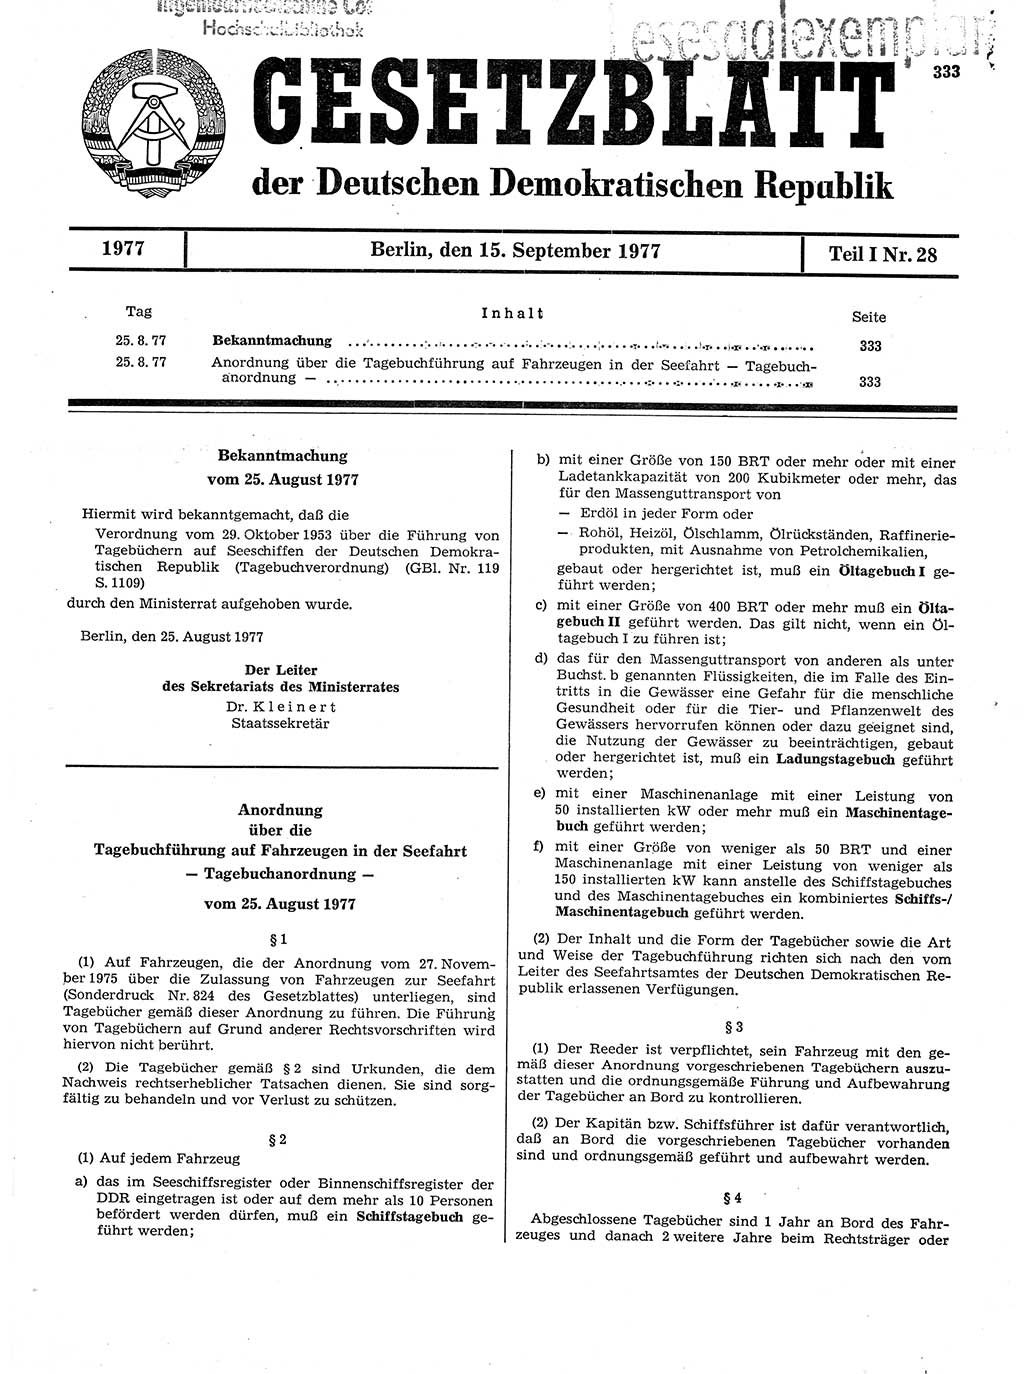 Gesetzblatt (GBl.) der Deutschen Demokratischen Republik (DDR) Teil Ⅰ 1977, Seite 333 (GBl. DDR Ⅰ 1977, S. 333)